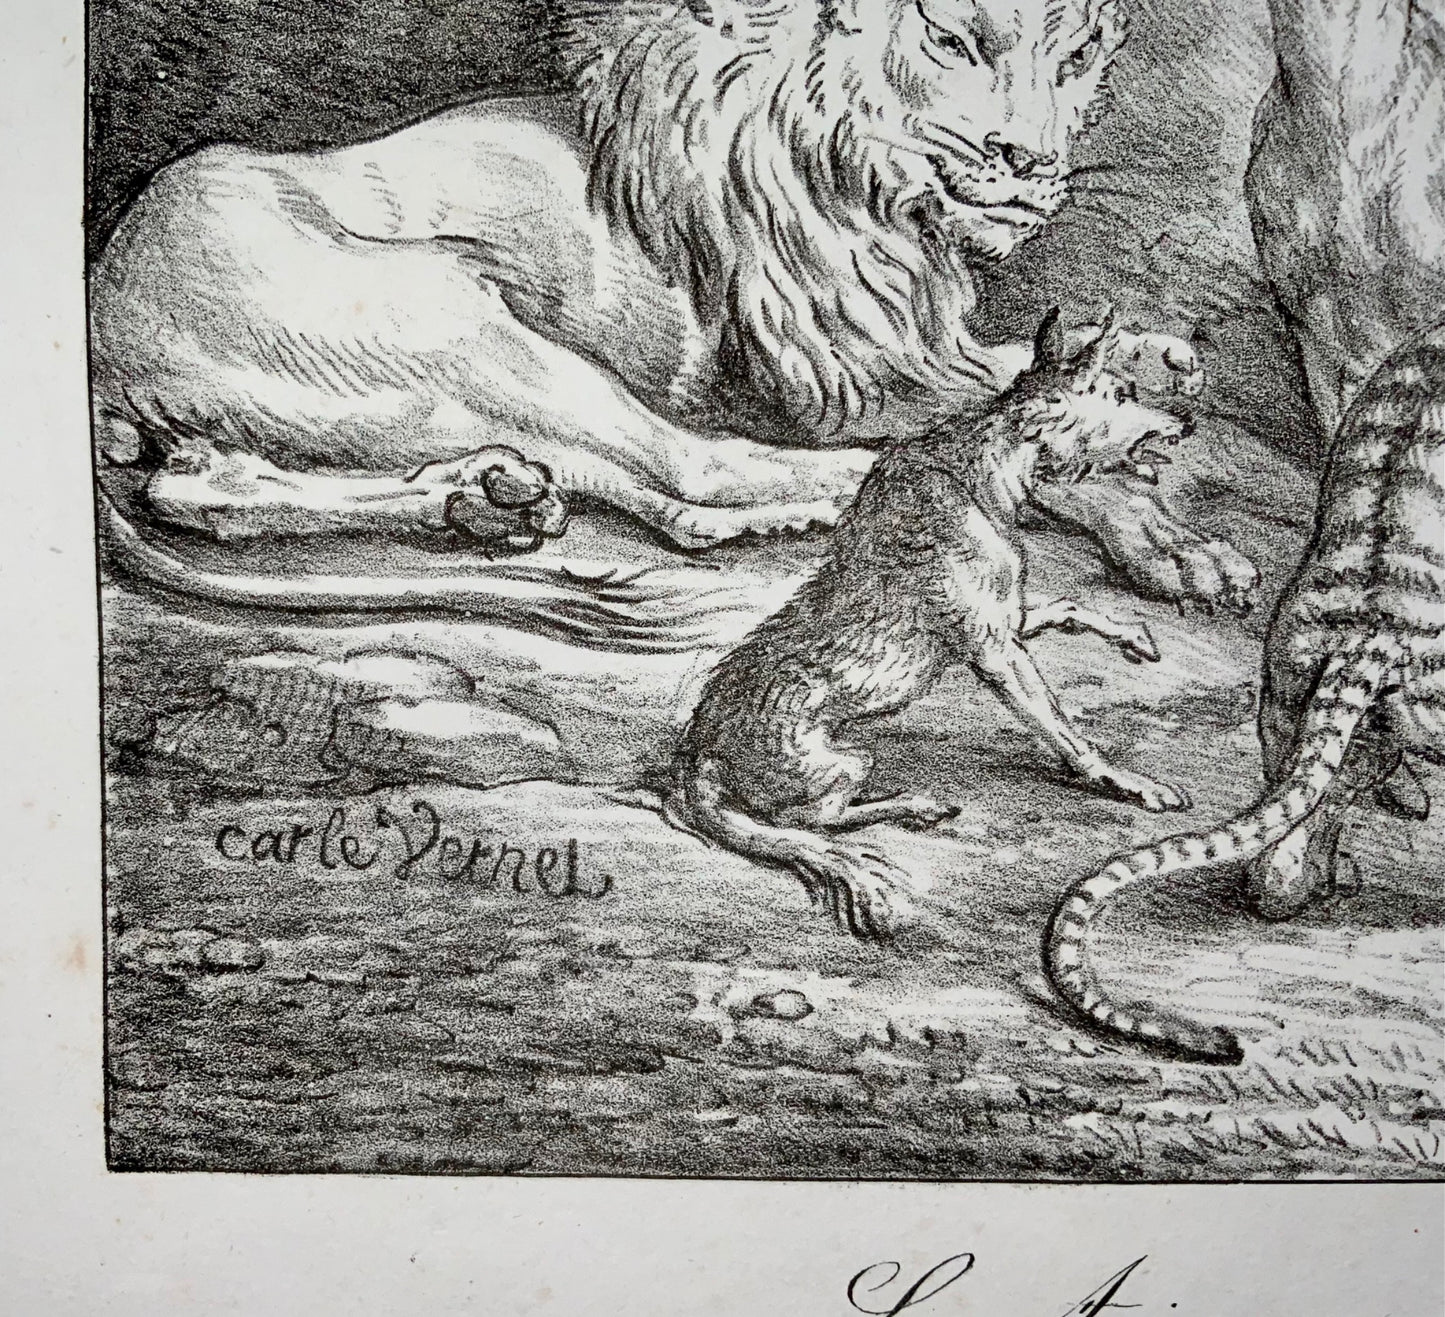 1818 'Incunables de lithographie' Carle Vernet, G. Engelmann, Bestiaire, Lion